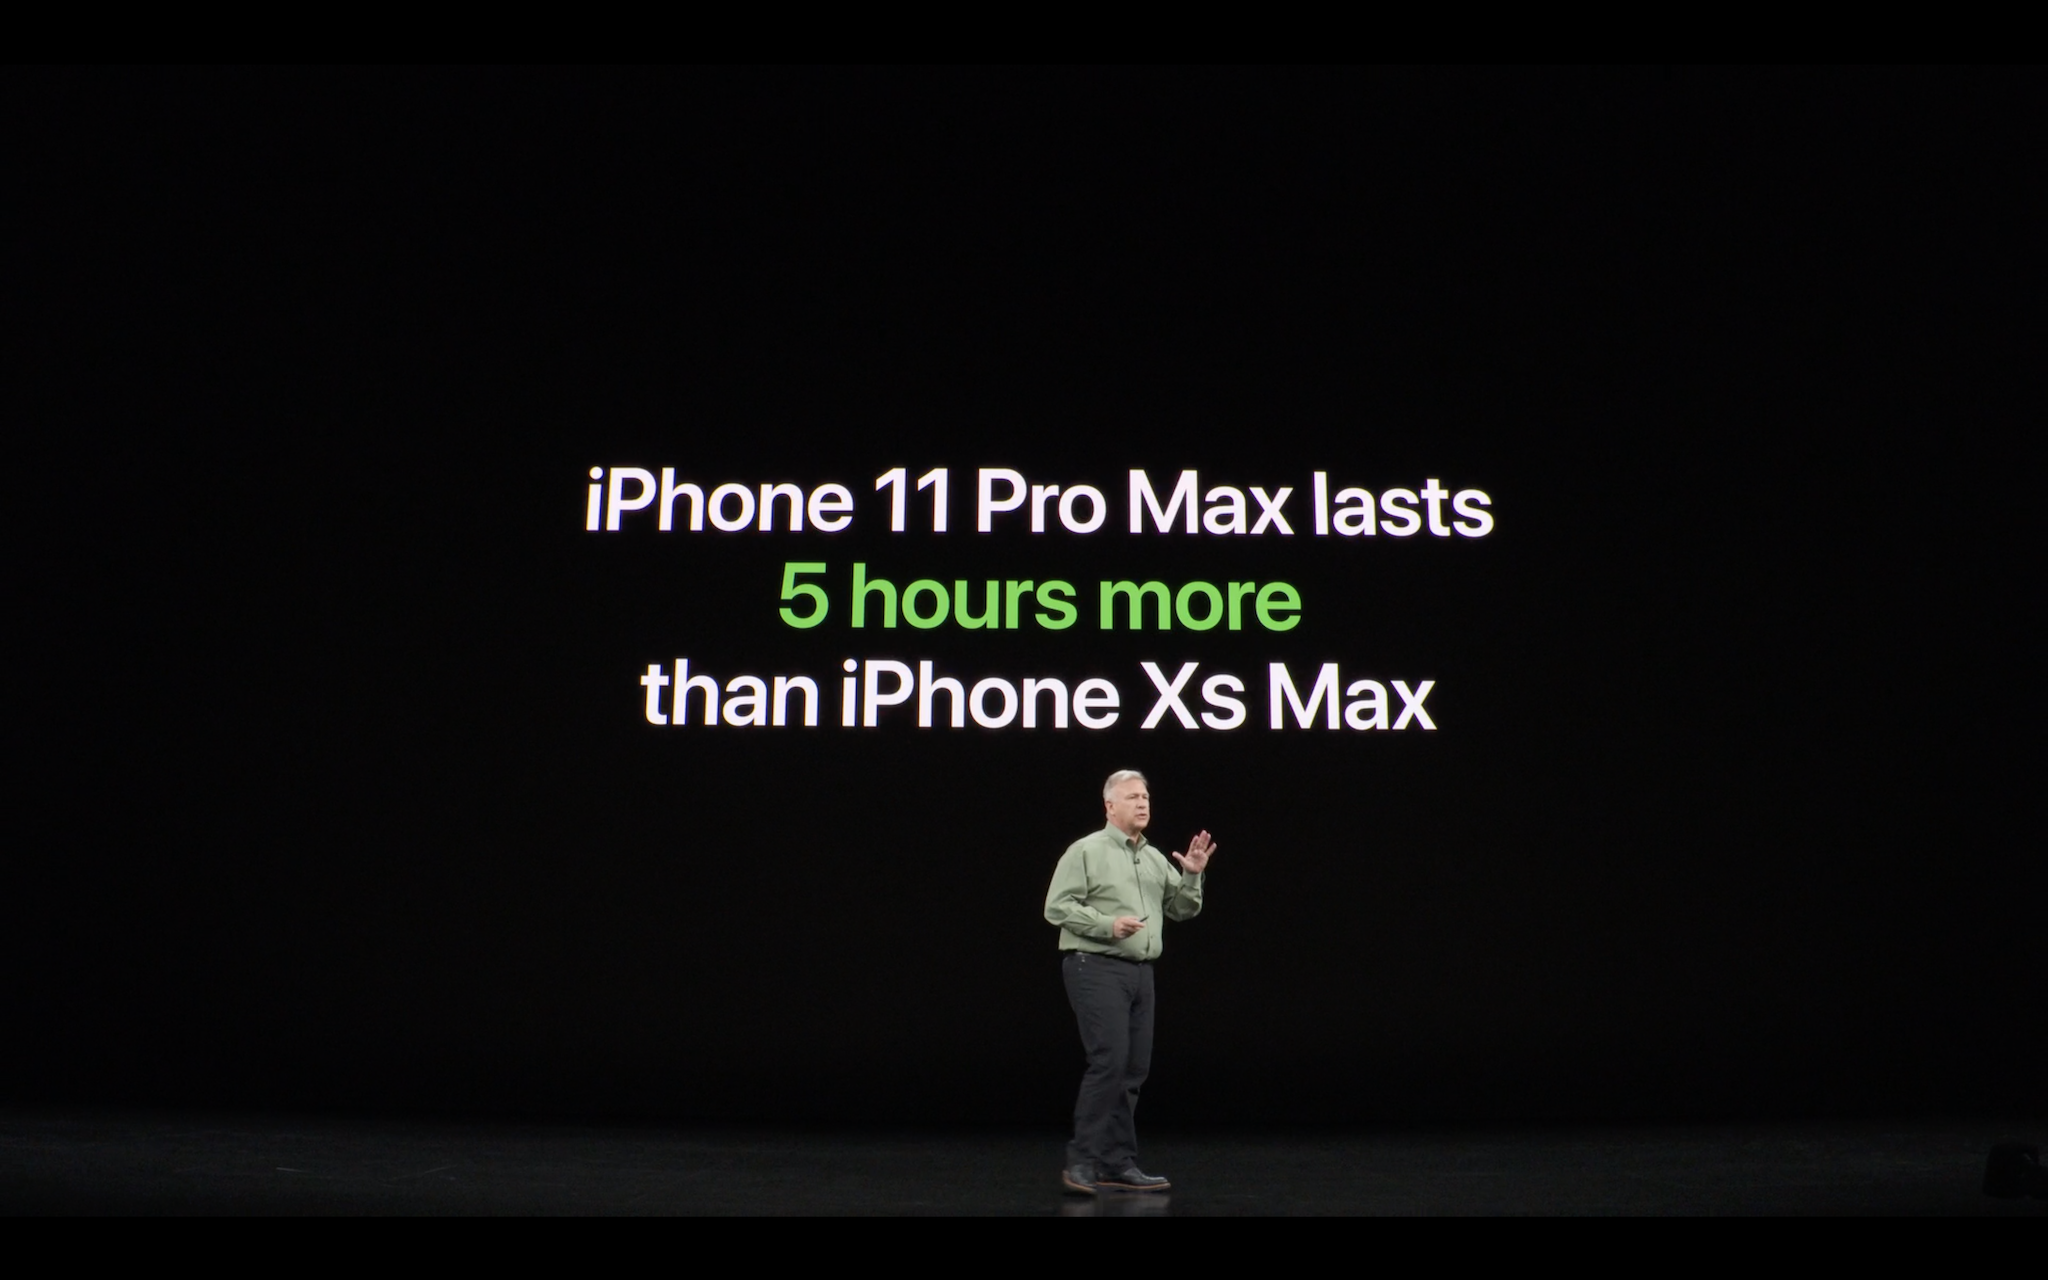 iPhone 11 Pro có thời lượng pin lâu hơn iPhone XS Max 4 tiếng trong khi iPhone 11 Pro Max là 5 tiếng. Bên cạnh đó, Apple nâng cấp sạc nhanh trên iPhone từ 15 watt lên 18 watt.